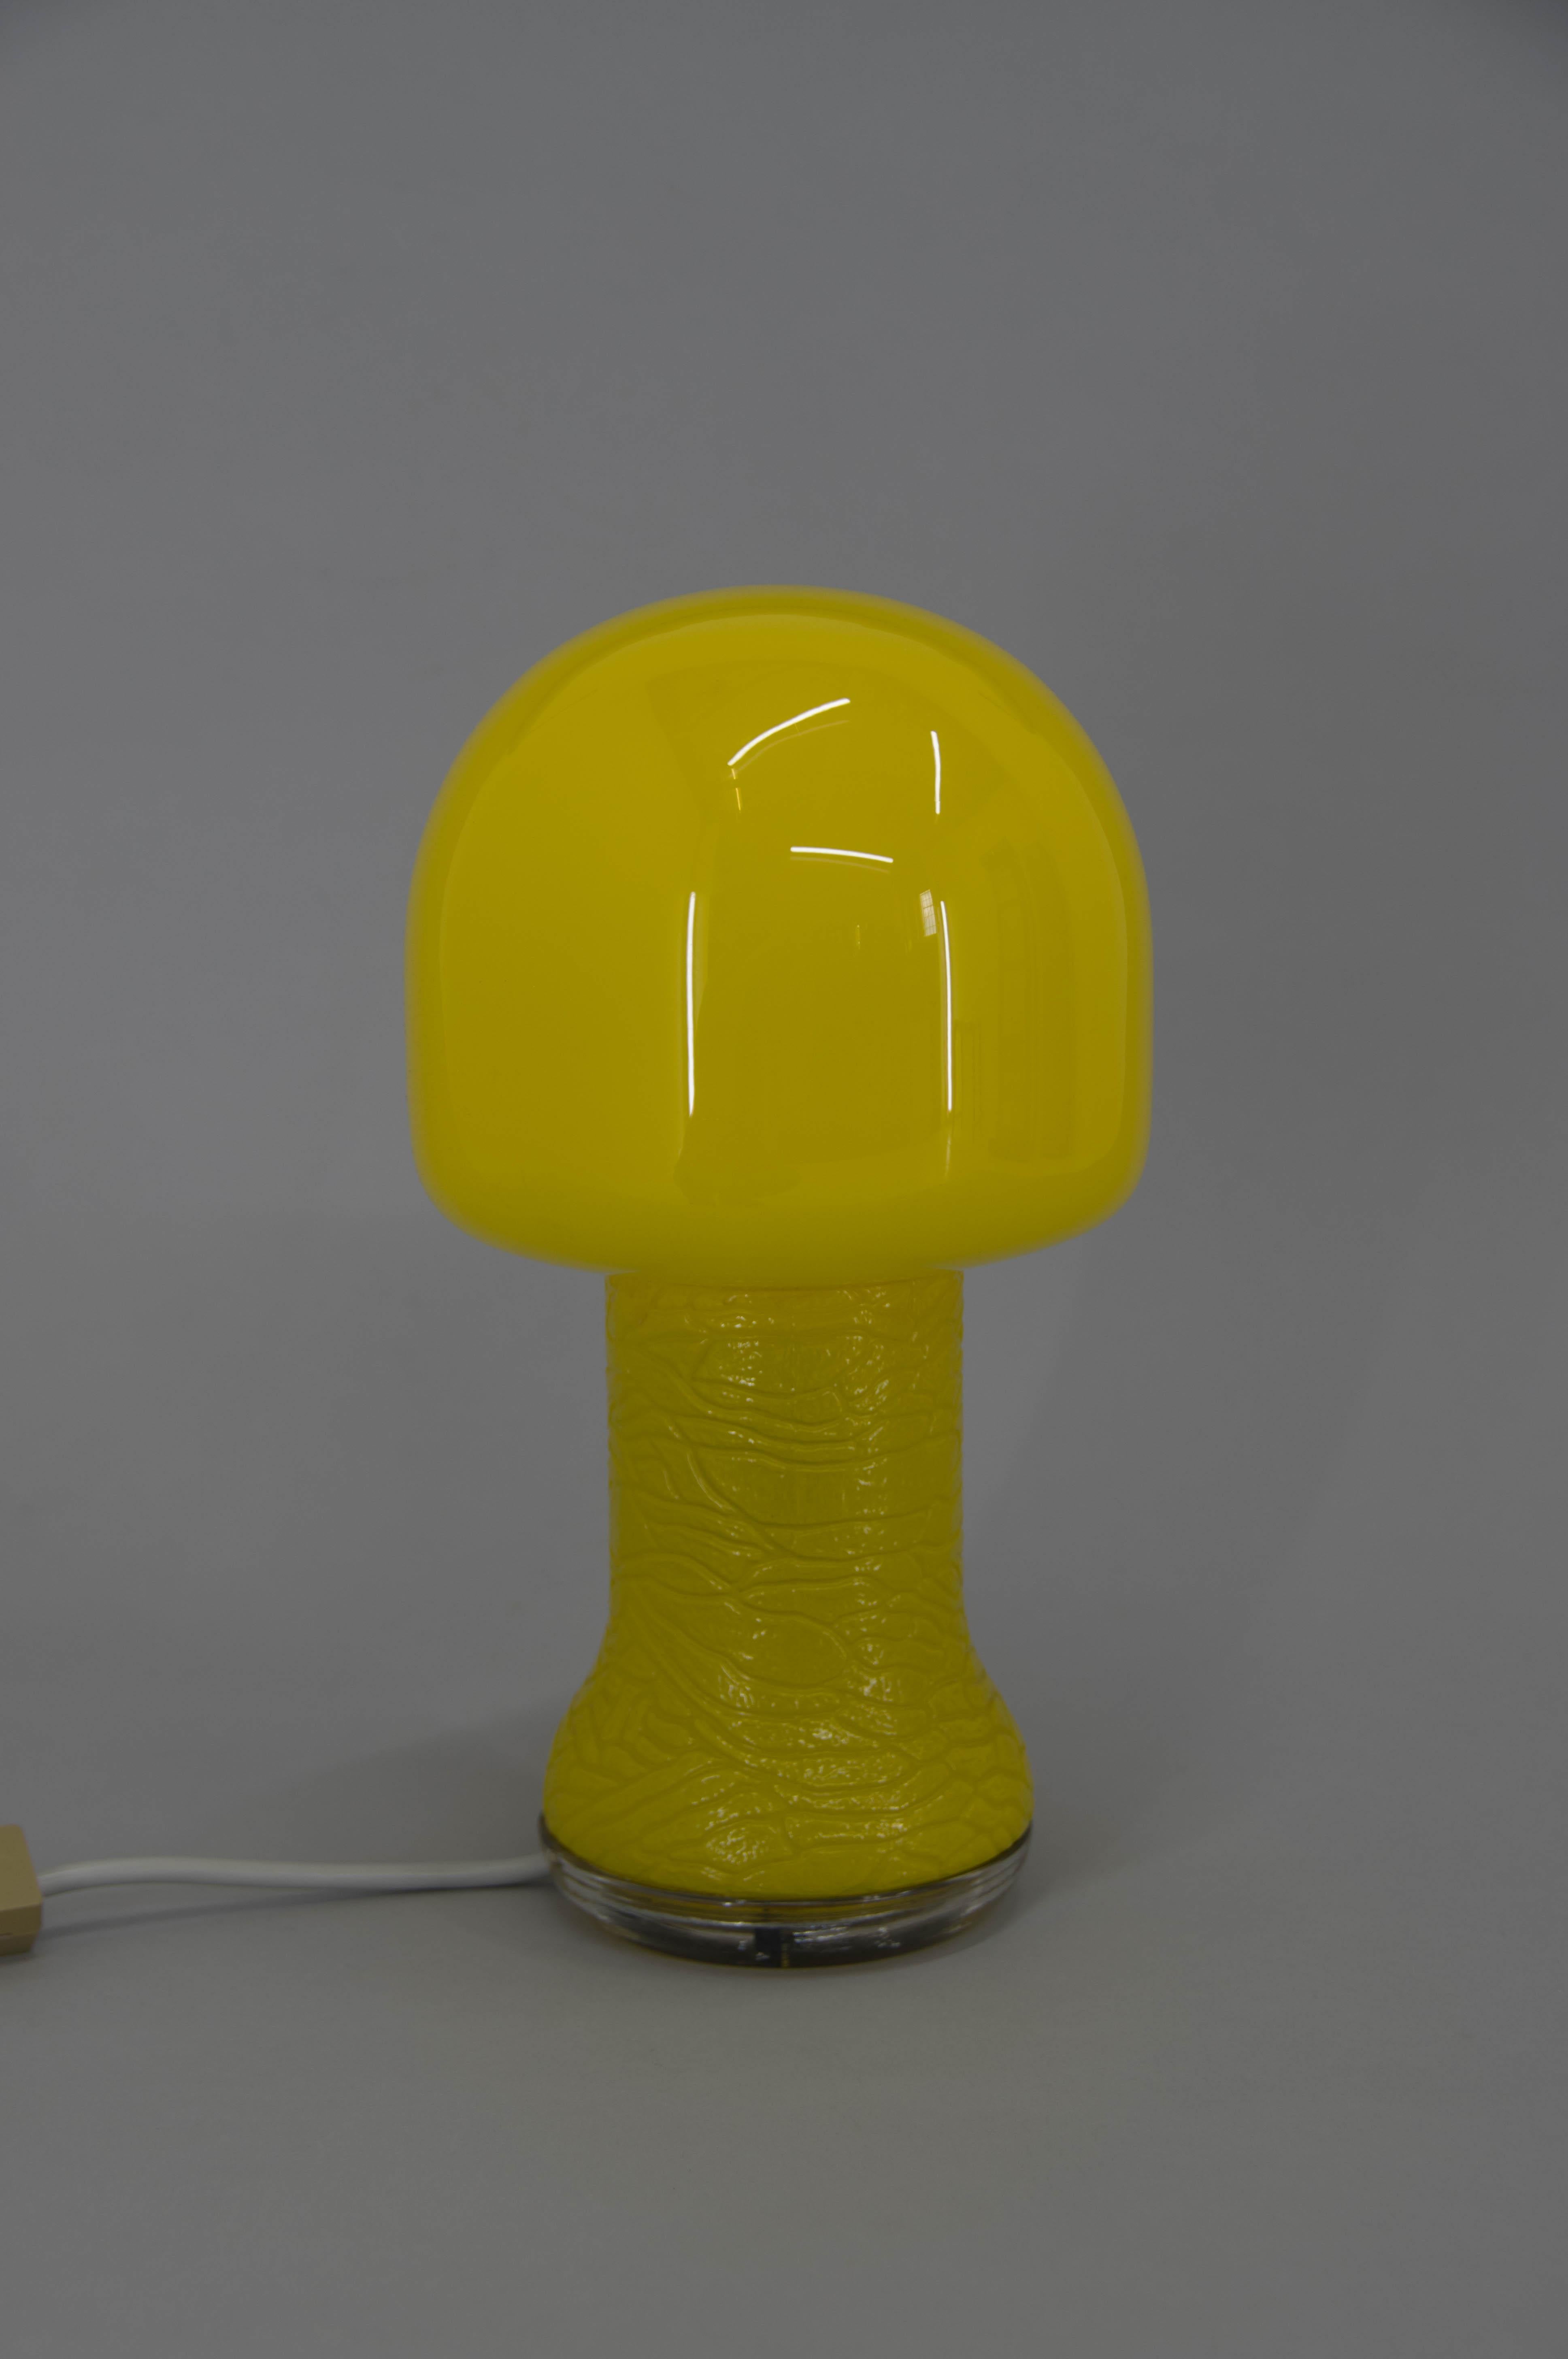 Lampe de table en verre jaune produite en Allemagne dans les années 1970
Très bon état d'origine
1x60W, ampoule E25-E27
Adaptateur pour prise américaine inclus